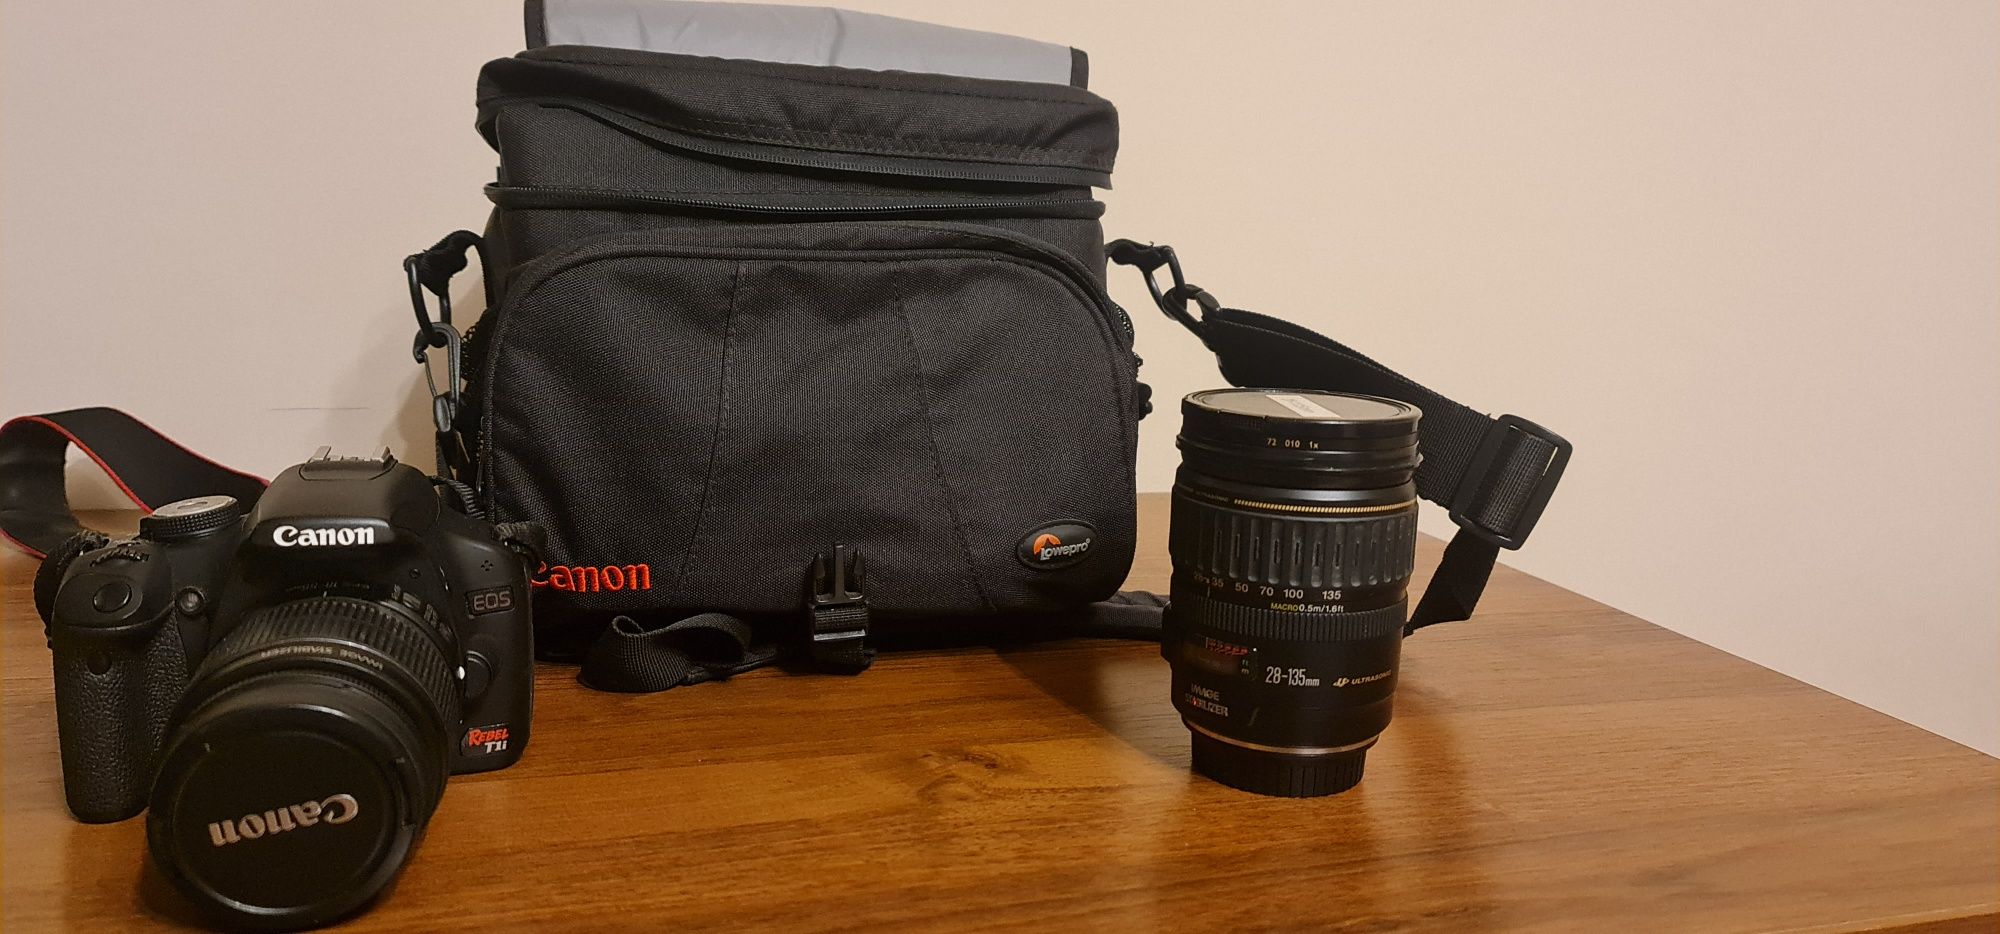 Aparat fotograficzny Canon + obiektyw + torba